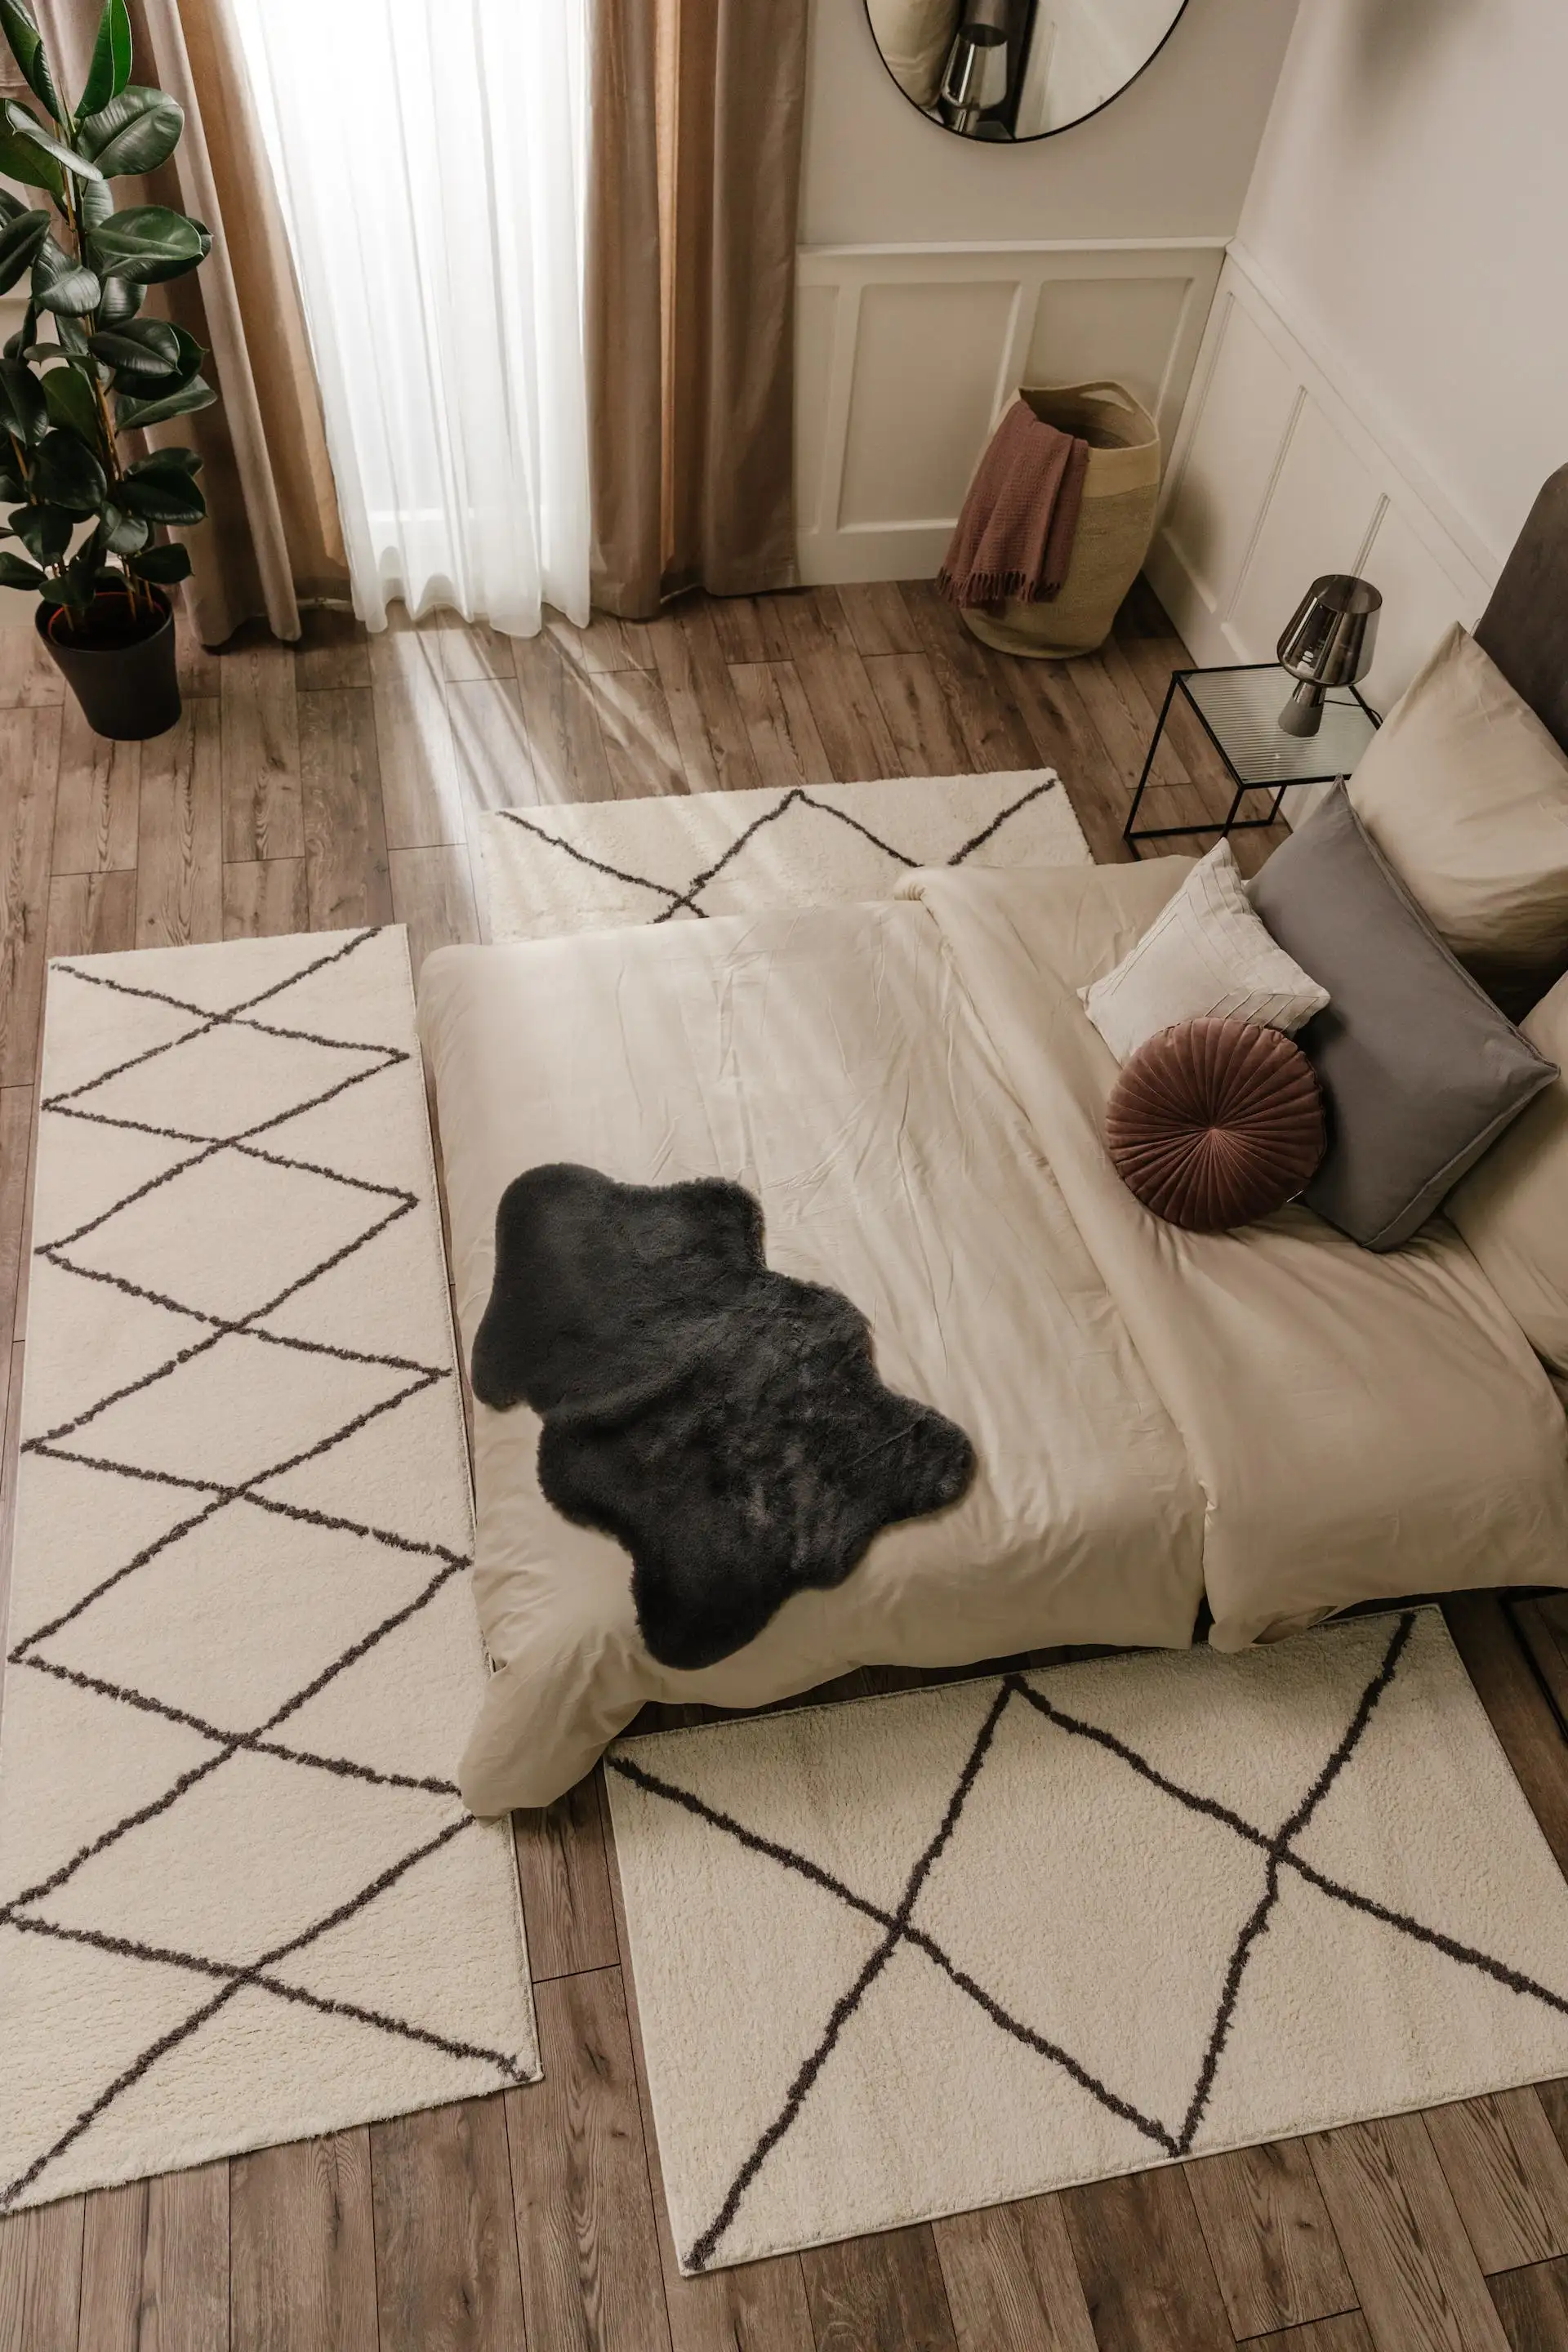 Schlafzimmer von oben eingerichtet mit zwei Kelim-Teppichen als Bettvorlegern, einem großen Boxspringbett in Grau, zwei schwarzen Beistelltischen und einer großen Topfpflanze